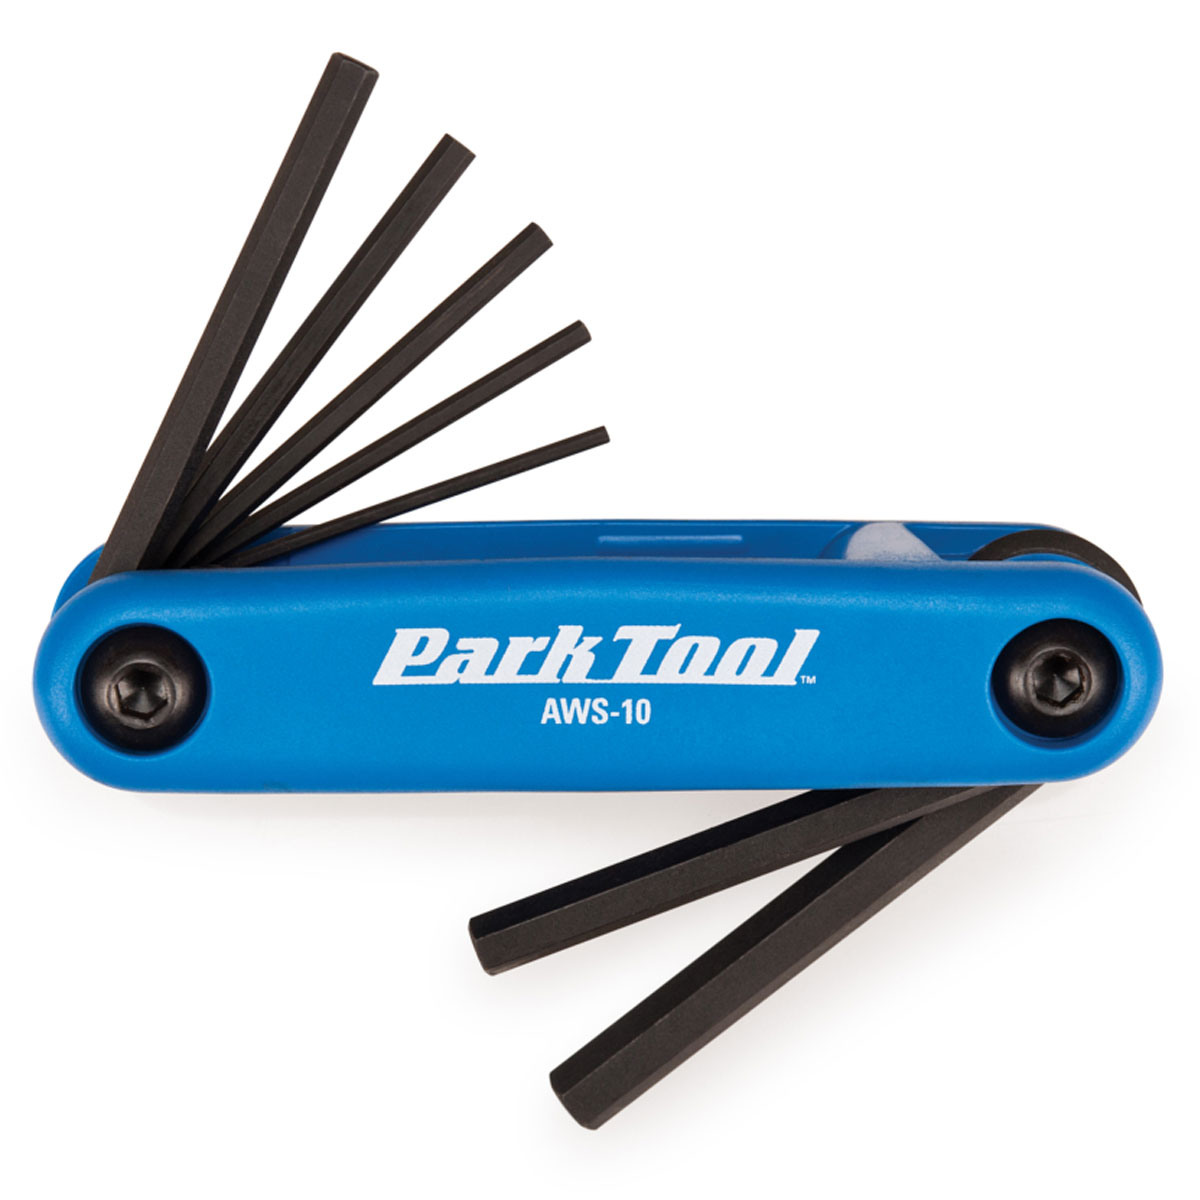 Park Tool AWS-10 Multi-Tool